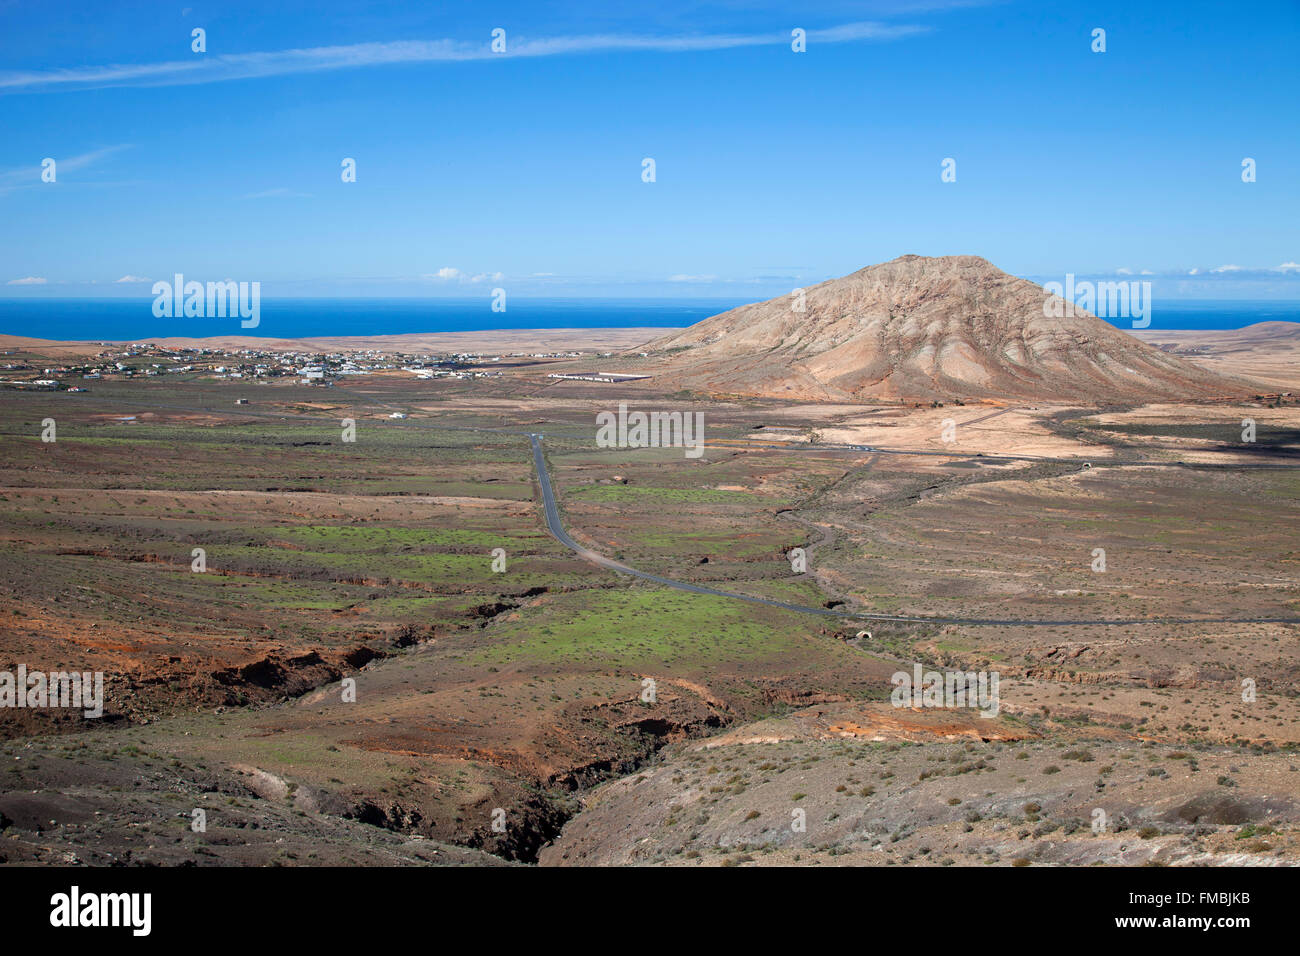 Villaggio Tindaya e montagna, isola di Fuerteventura, arcipelago delle Canarie, Spagna, Europa Foto Stock